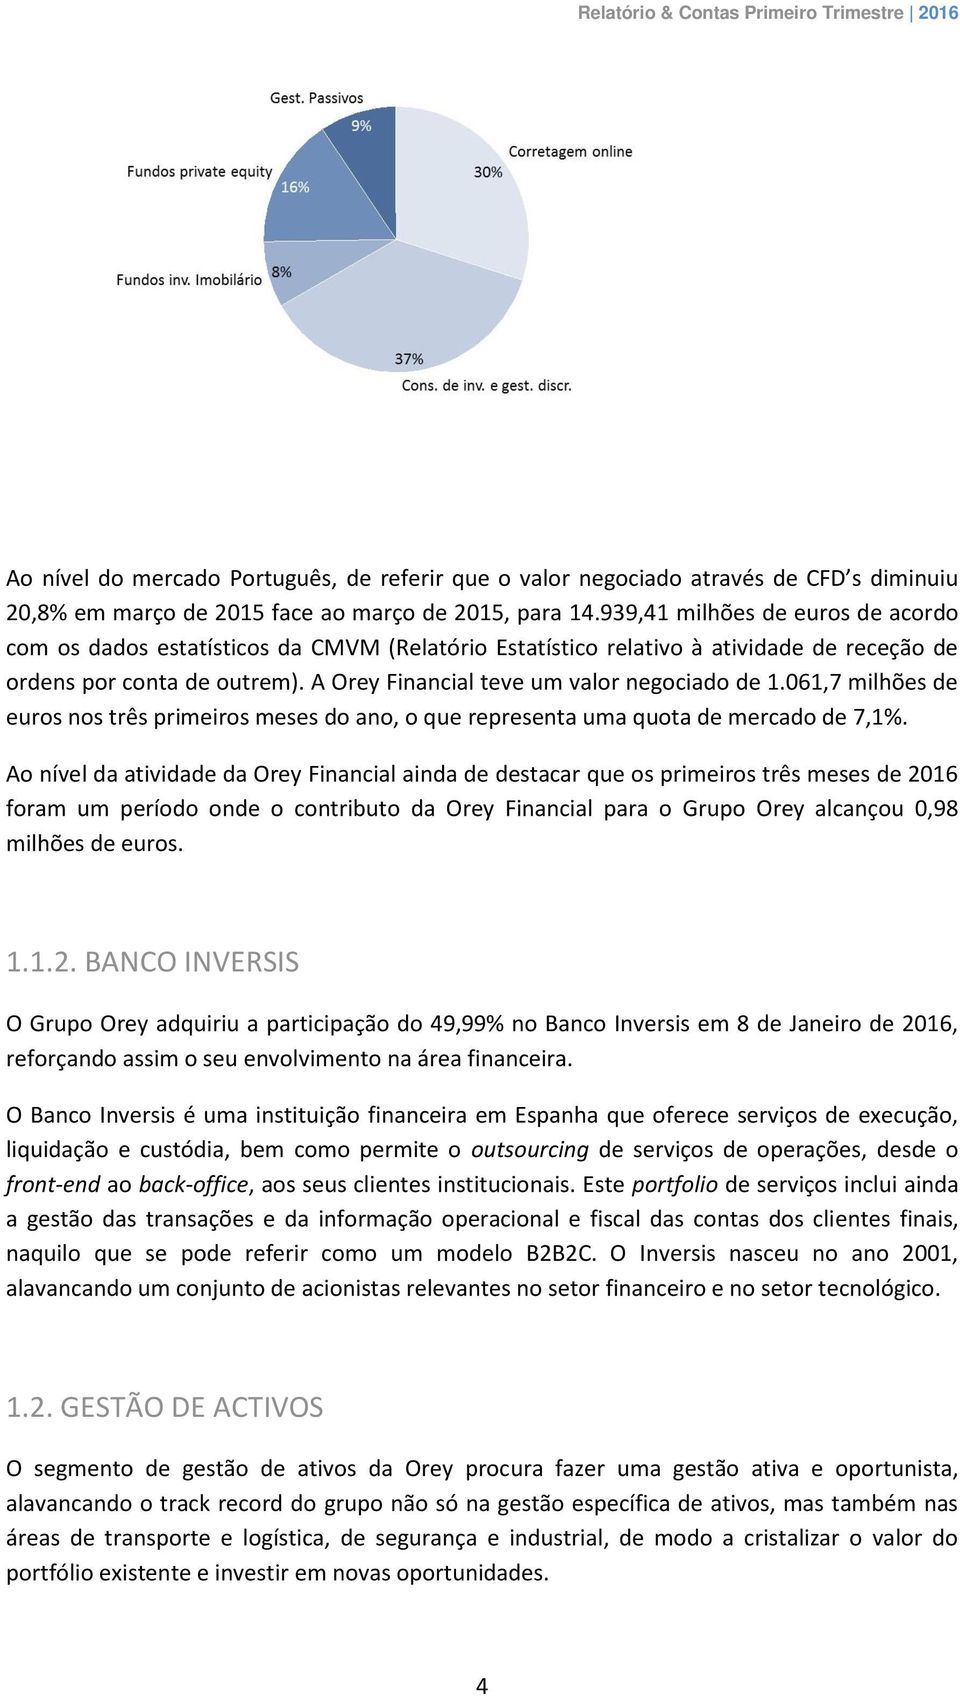 A Orey Financial teve um valor negociado de 1.061,7 milhões de euros nos três primeiros meses do ano, o que representa uma quota de mercado de 7,1%.